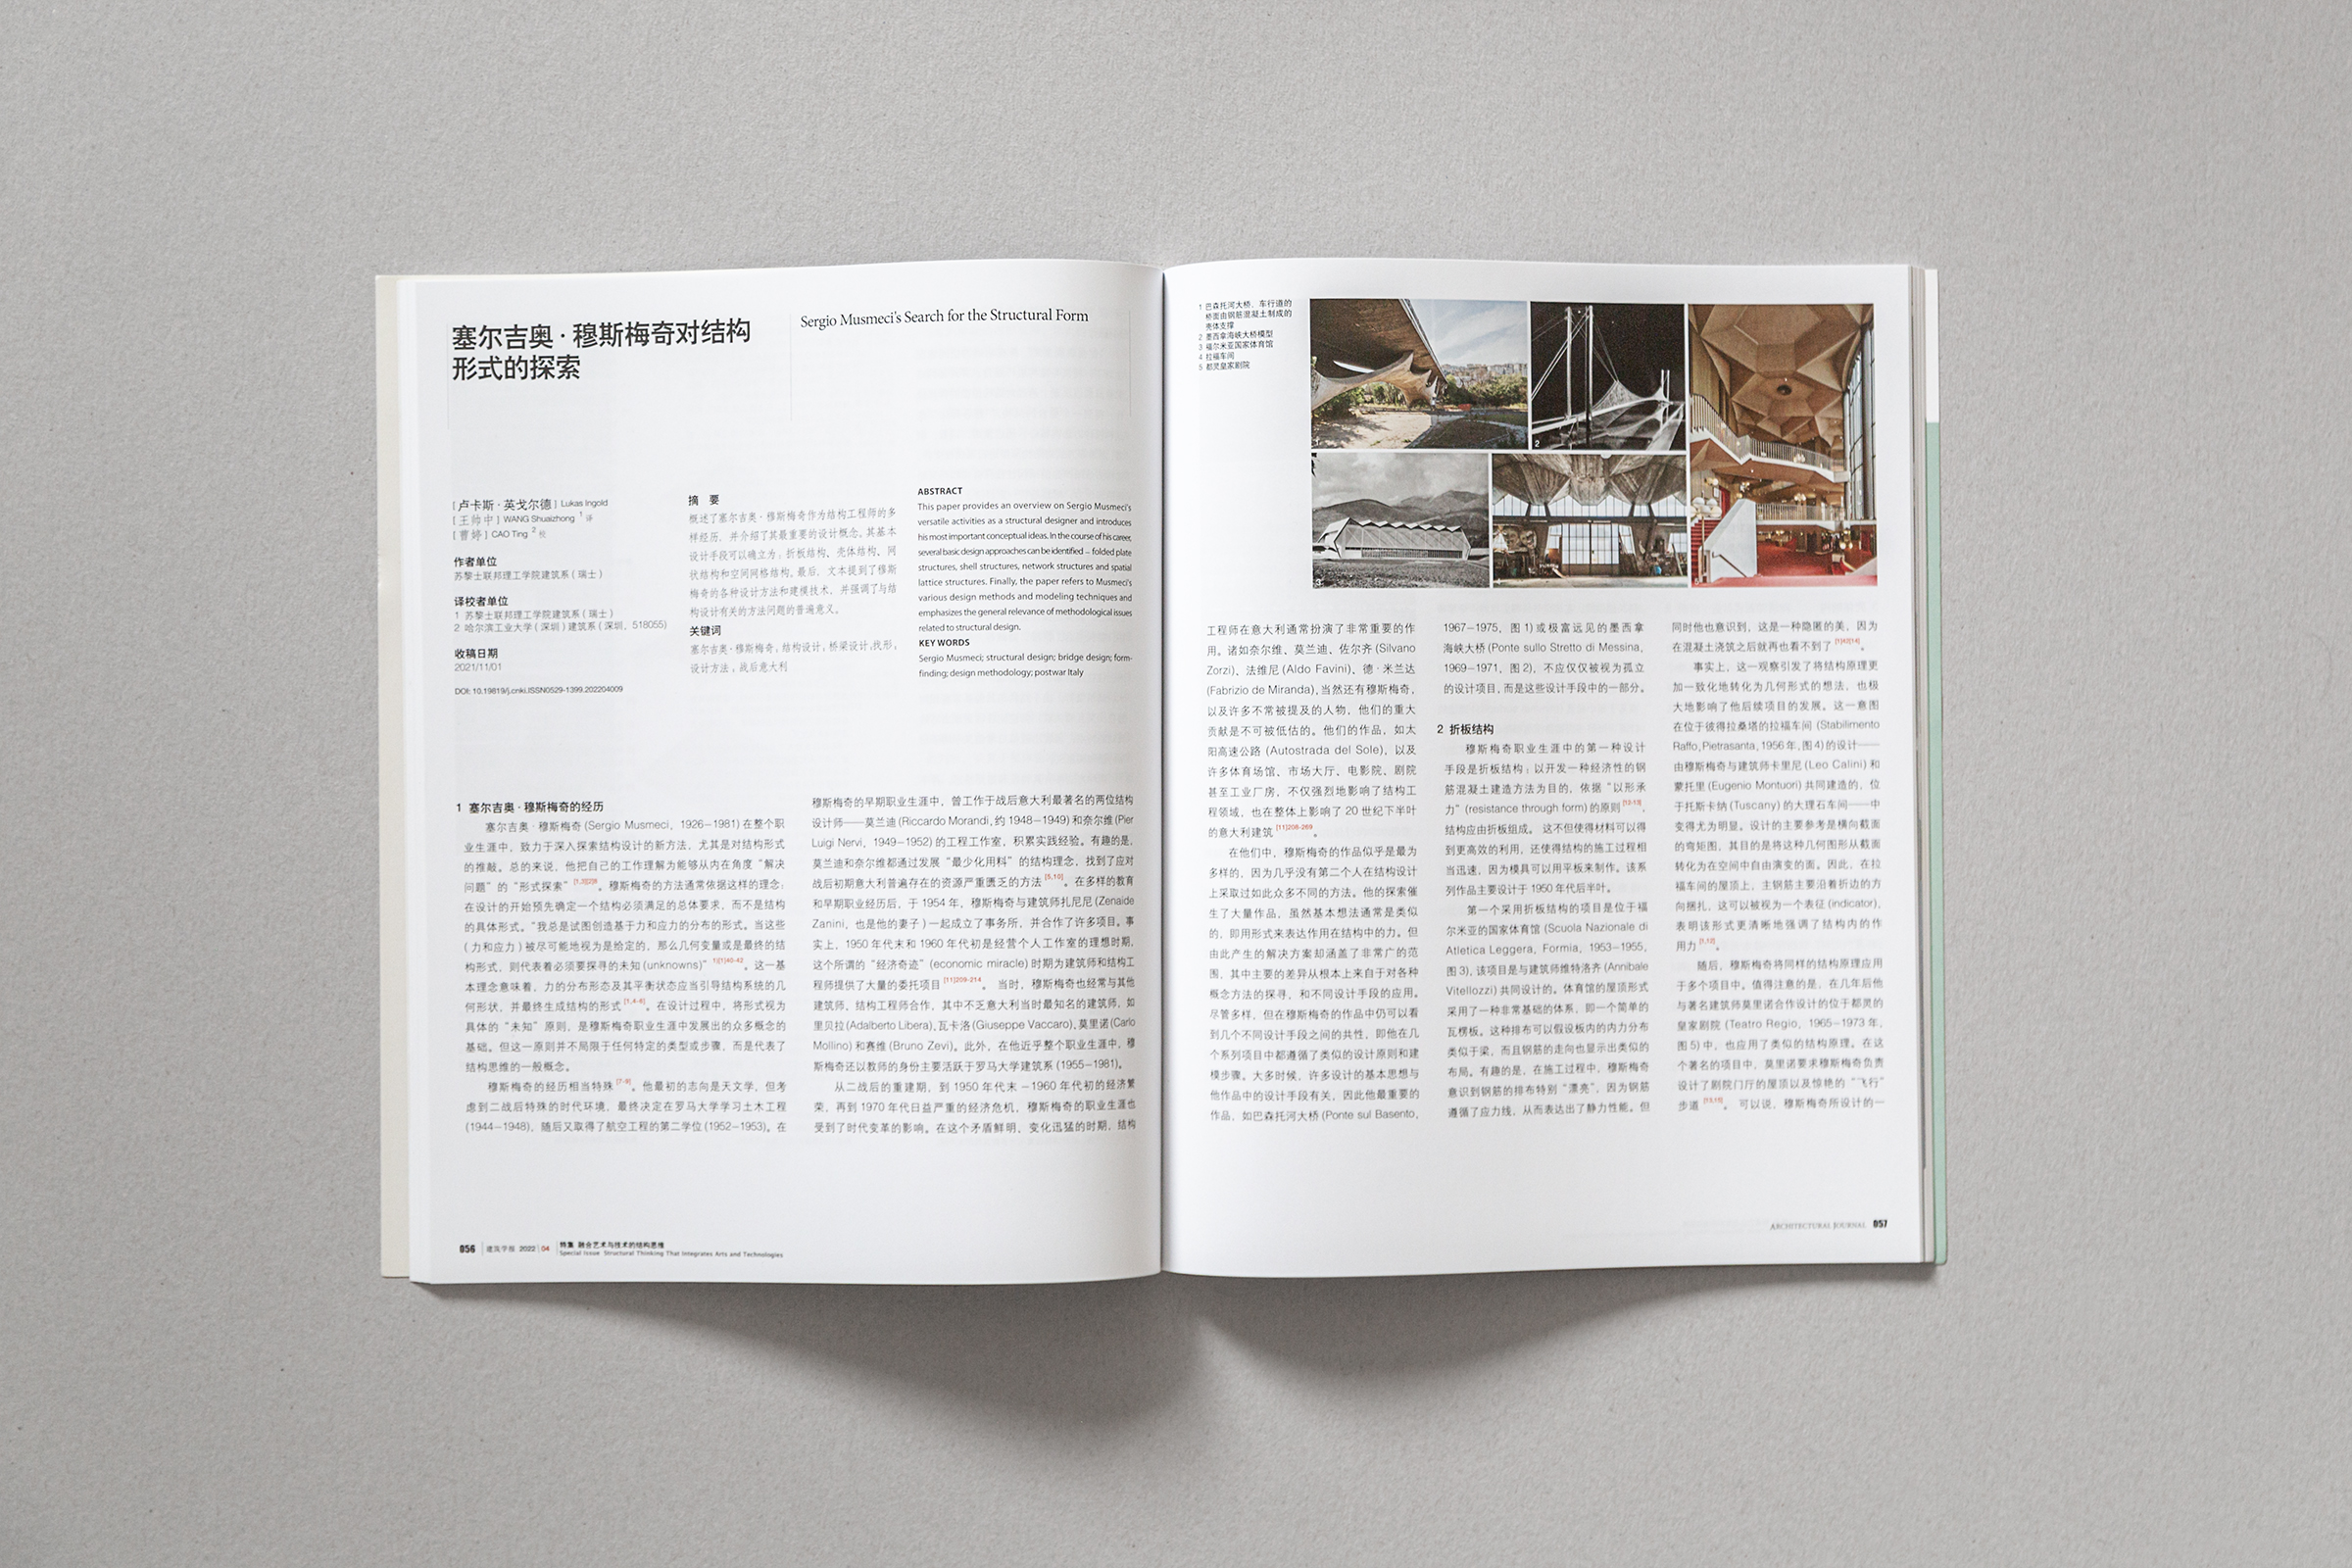 Ingold Sergio Musmeci China Architecture Journal